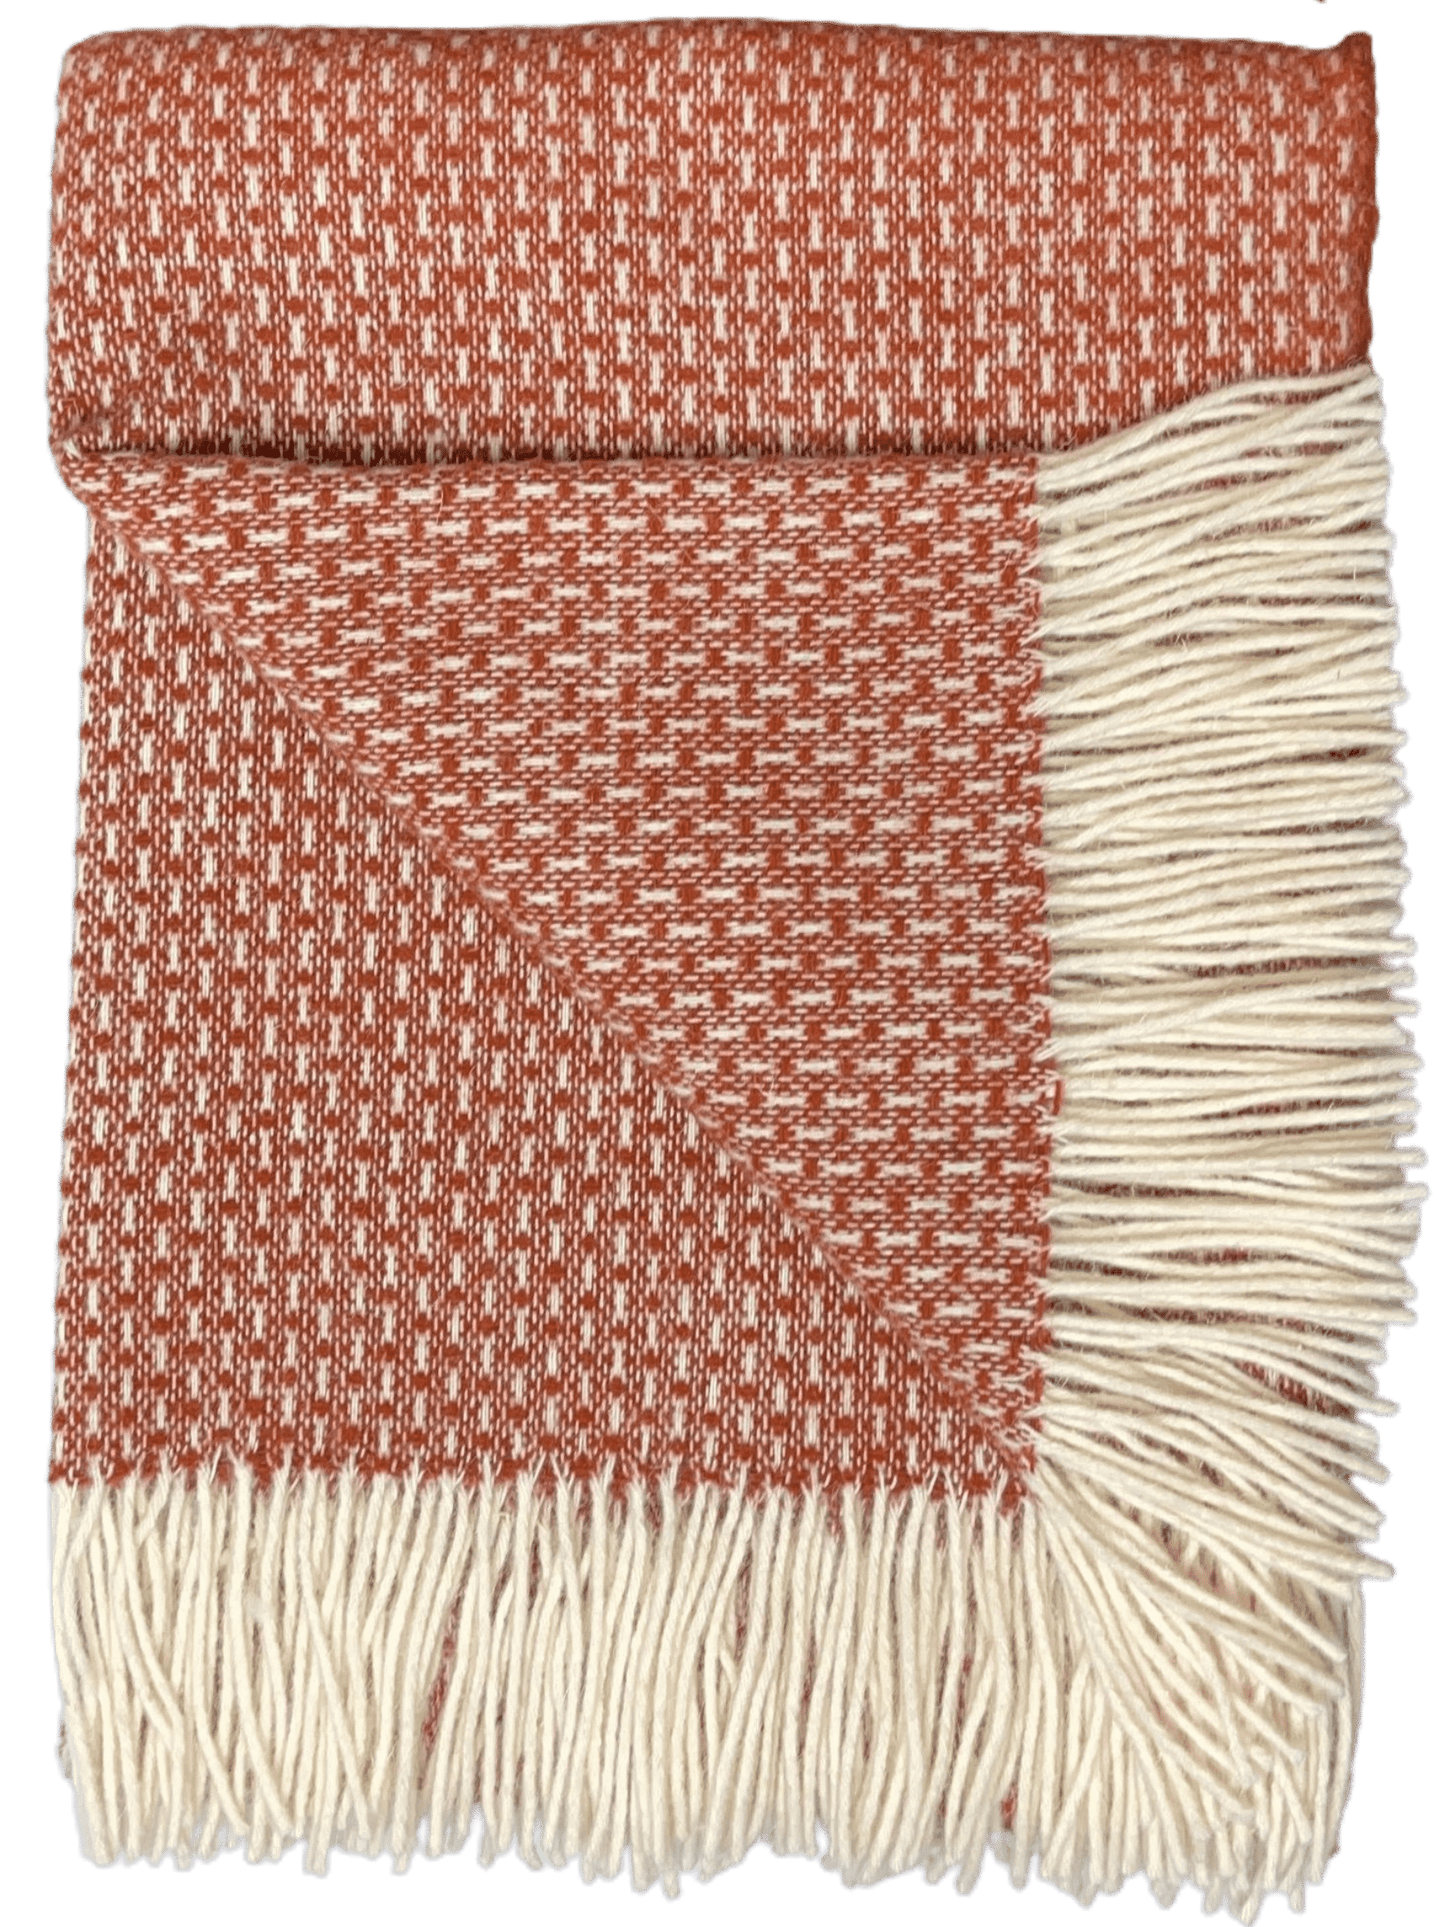 Uldplaiden tæppe Uldplaid i 100% uld 140x200 cm.- Rustfarvet m. mønster 5713931011810 otherstuff